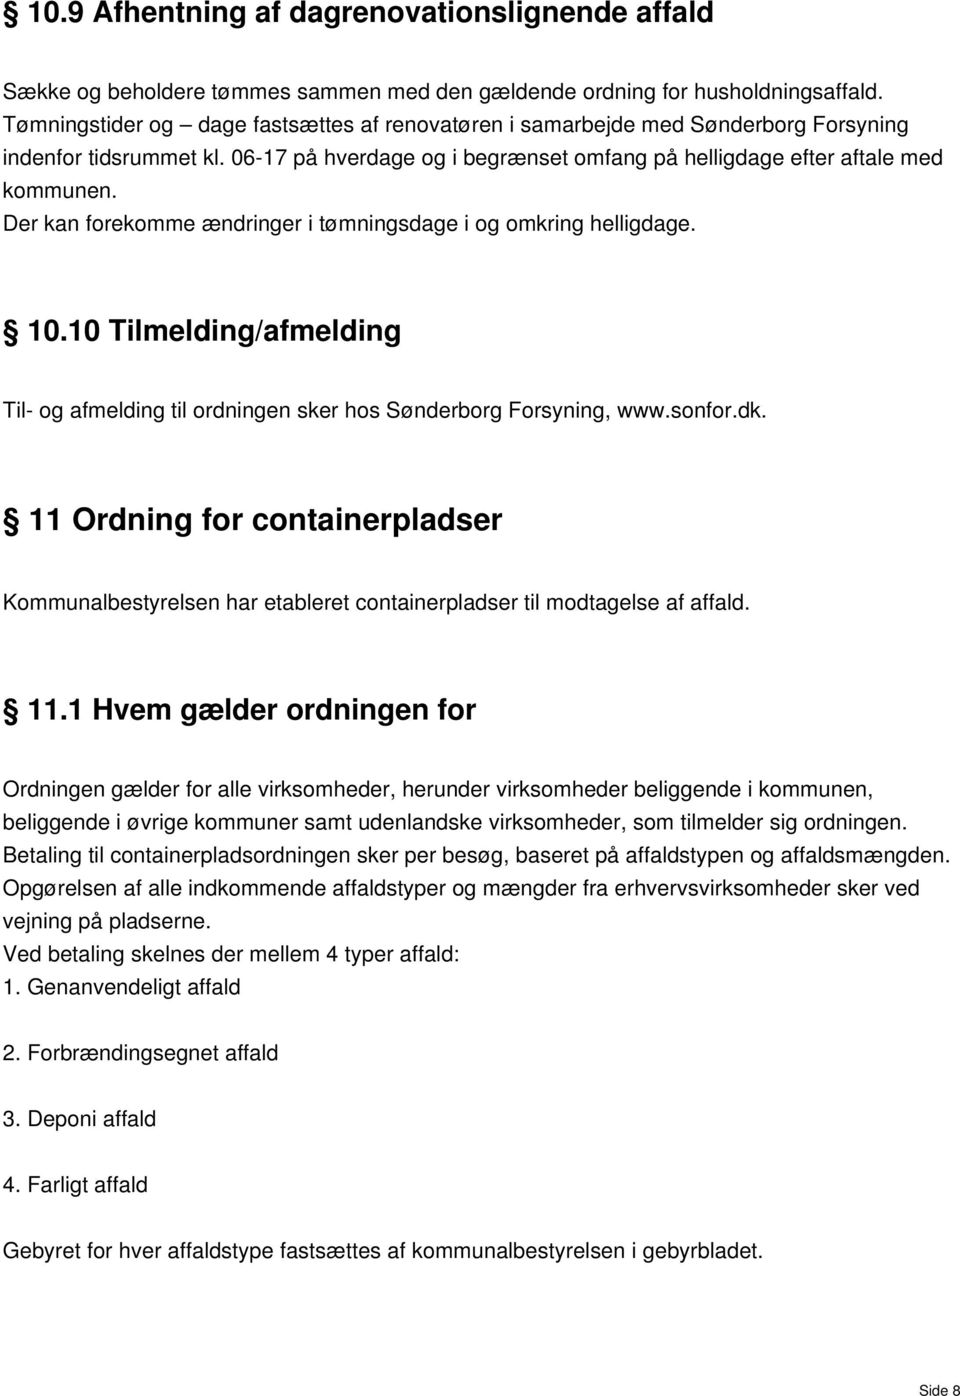 Der kan forekomme ændringer i tømningdage i og omkring helligdage. 10.10 Tilmelding/afmelding Til- og afmelding til ordningen ker ho Sønderborg Foryning, www.onfor.dk.